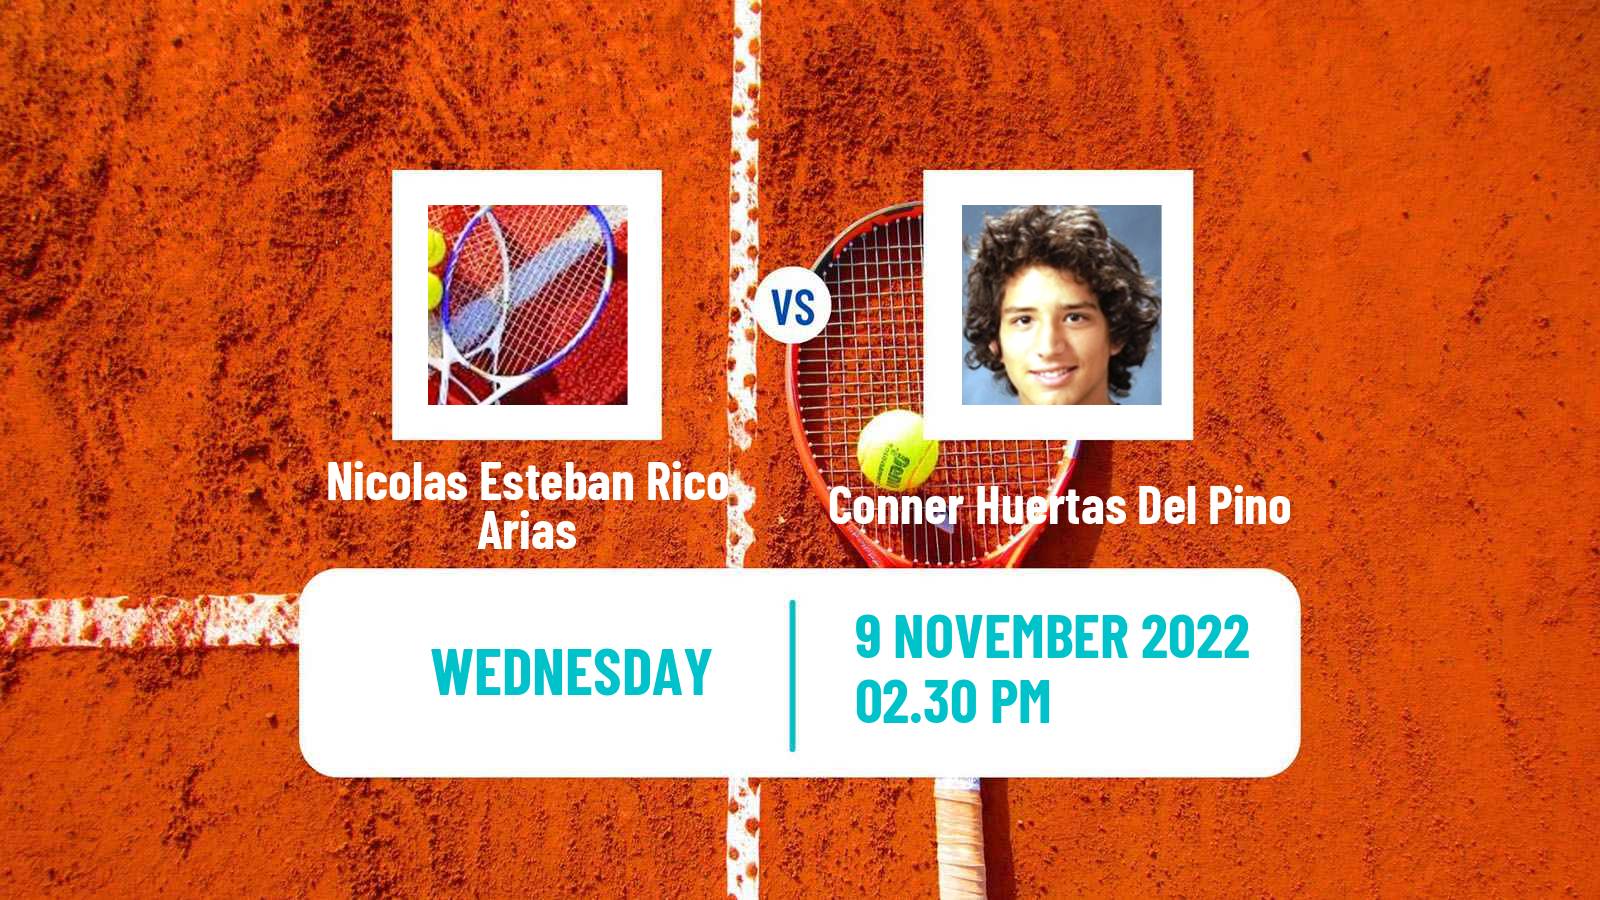 Tennis ITF Tournaments Nicolas Esteban Rico Arias - Conner Huertas Del Pino